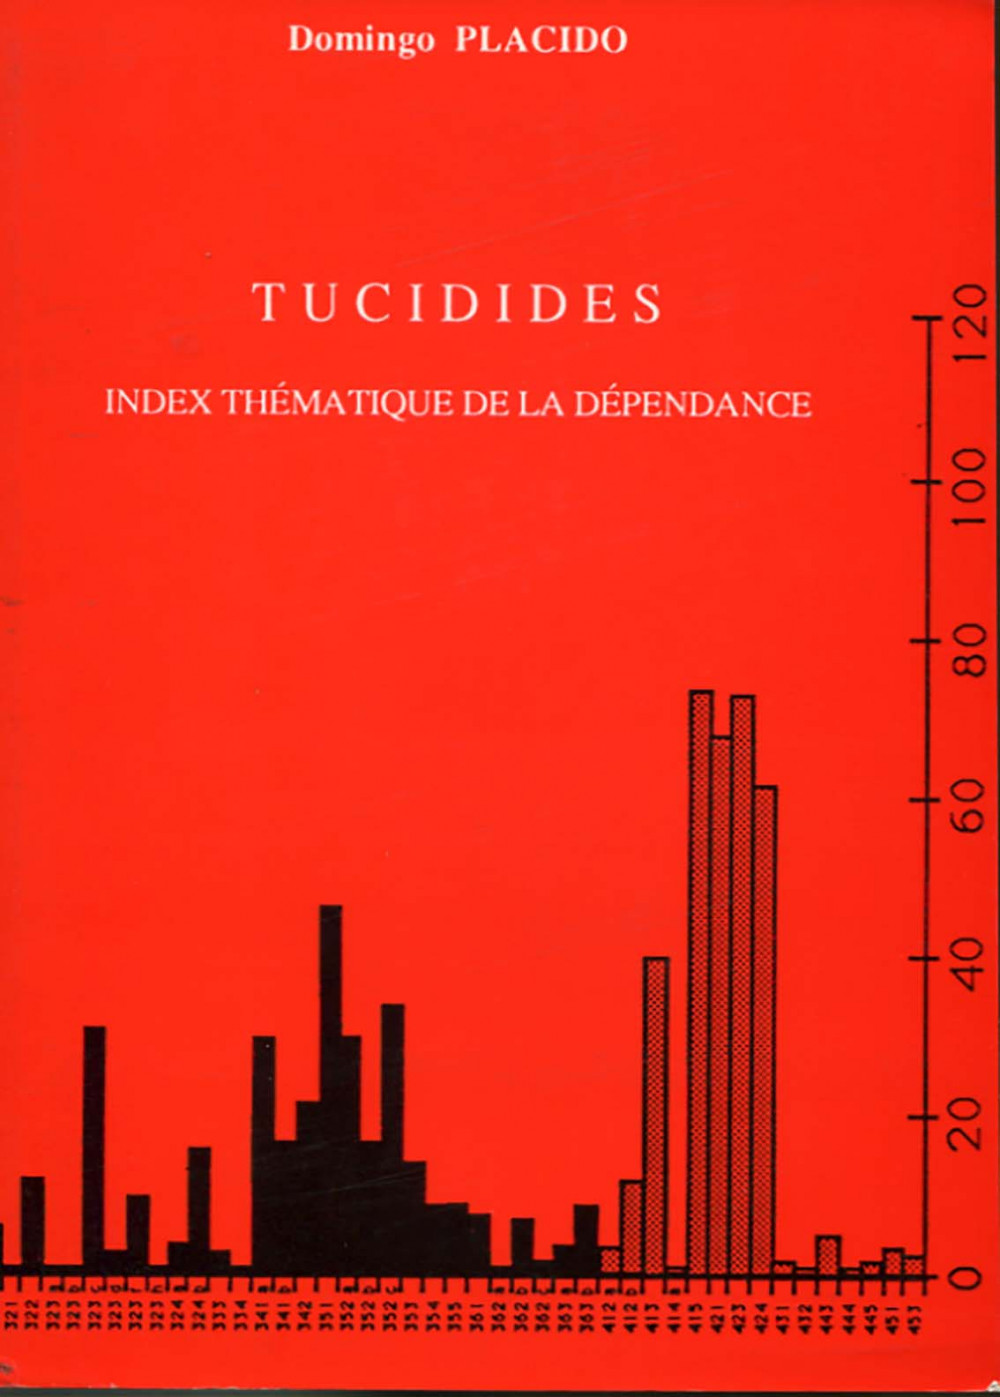 TUCIDIDES Index thématique de la dépendance